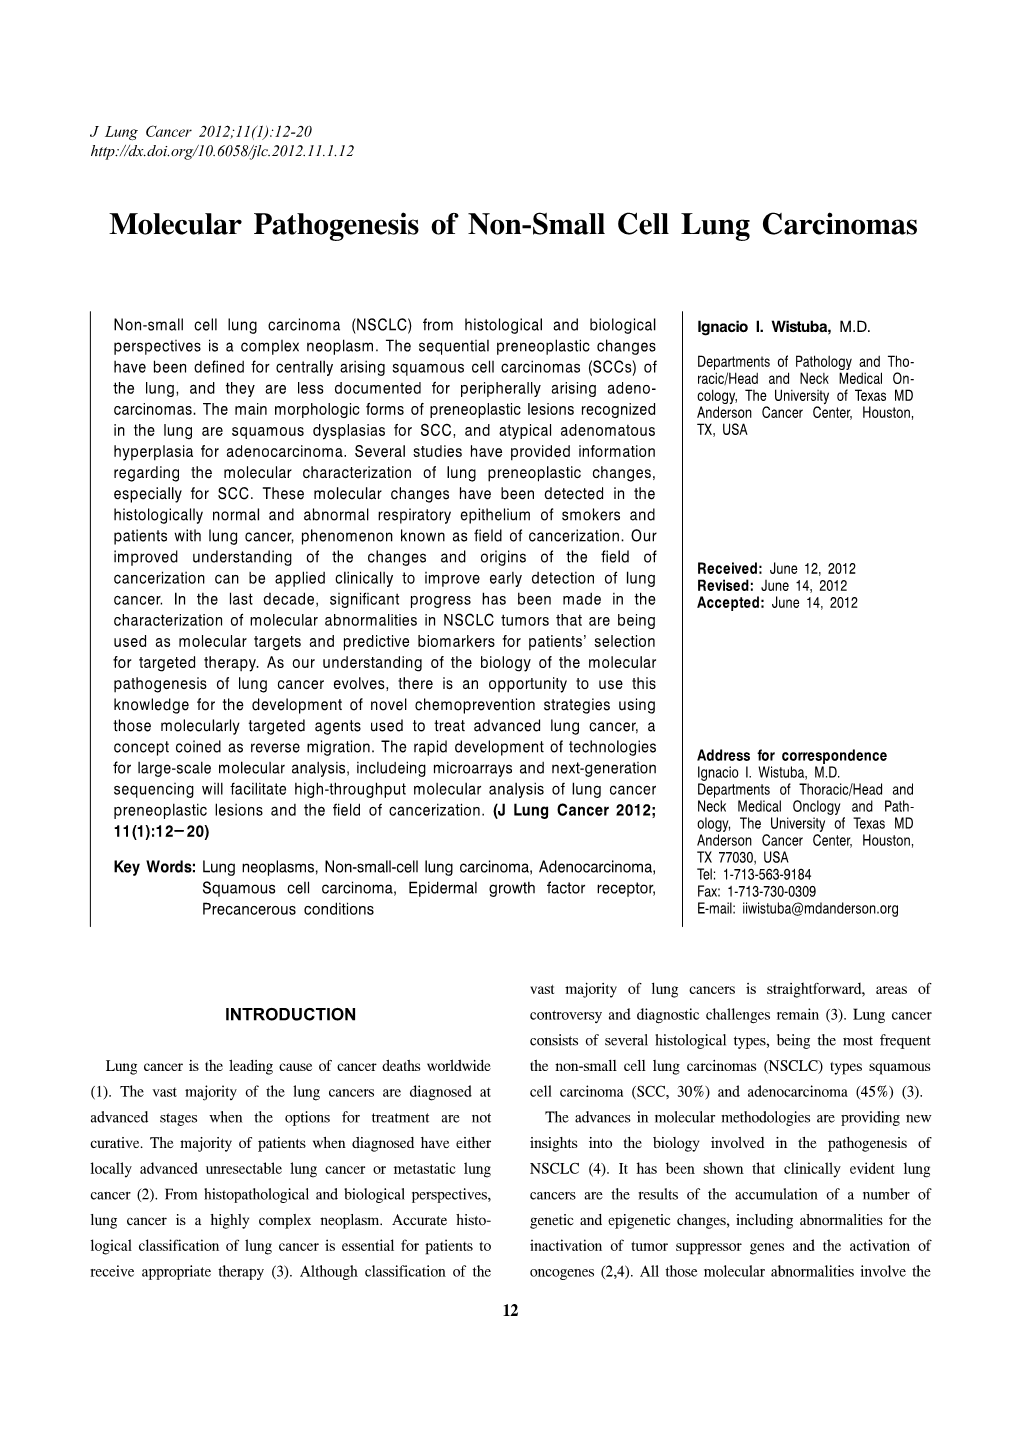 Molecular Pathogenesis of Non-Small Cell Lung Carcinomas